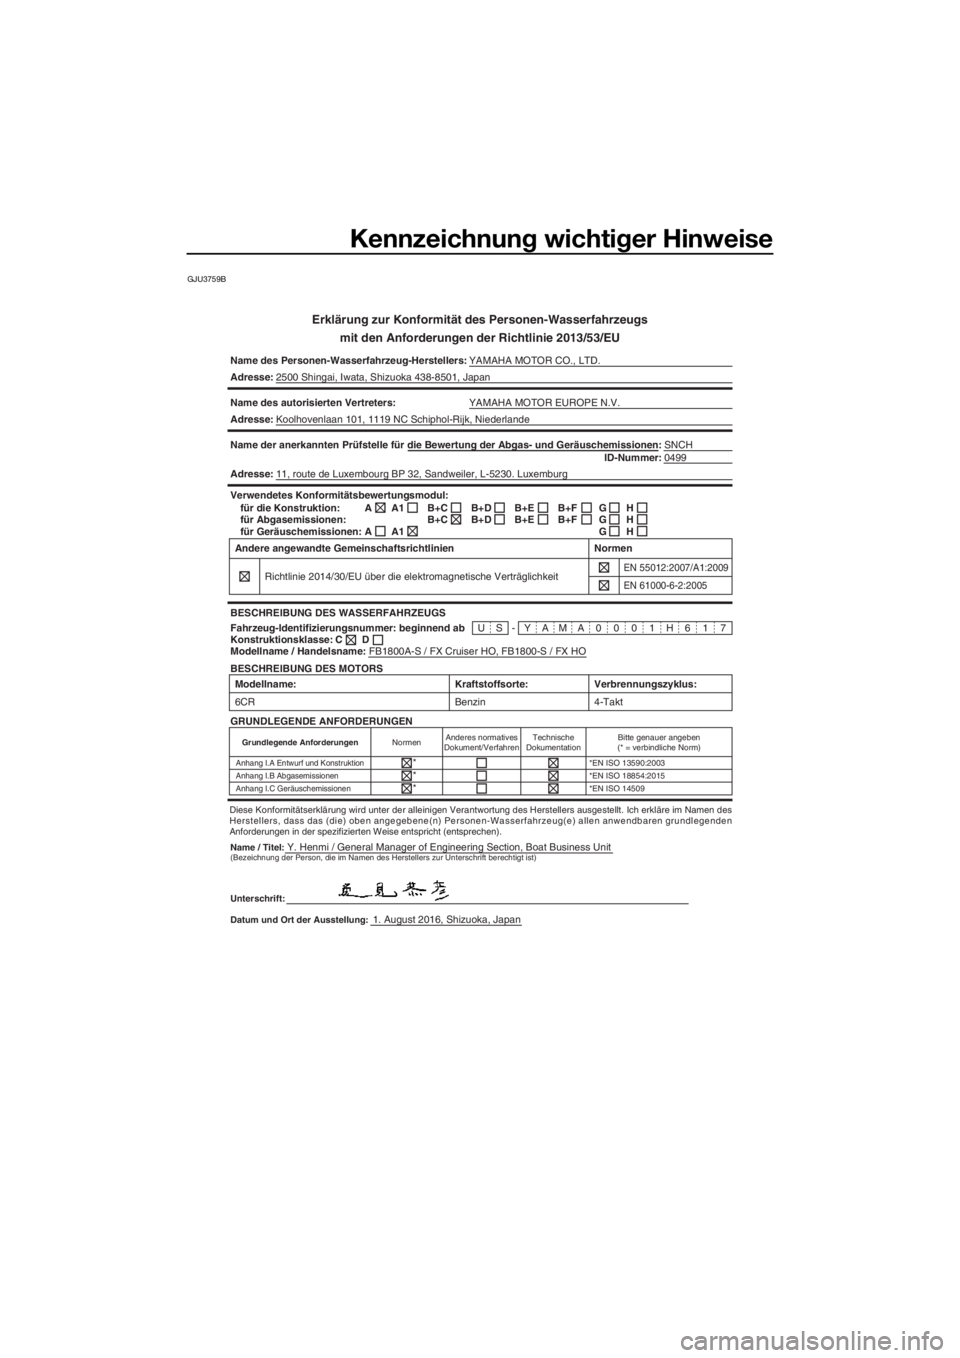 YAMAHA FX HO CRUISER 2017  Betriebsanleitungen (in German) Kennzeichnung wichtiger Hinweise
GJU3759B
Erklärung zur Konformität des Personen-Wasserfahrzeugs
mit den Anforderungen der Richtlinie 2013/53/EU
Name des Personen-Wasserfahrzeug-Herstellers:YAMAHA M